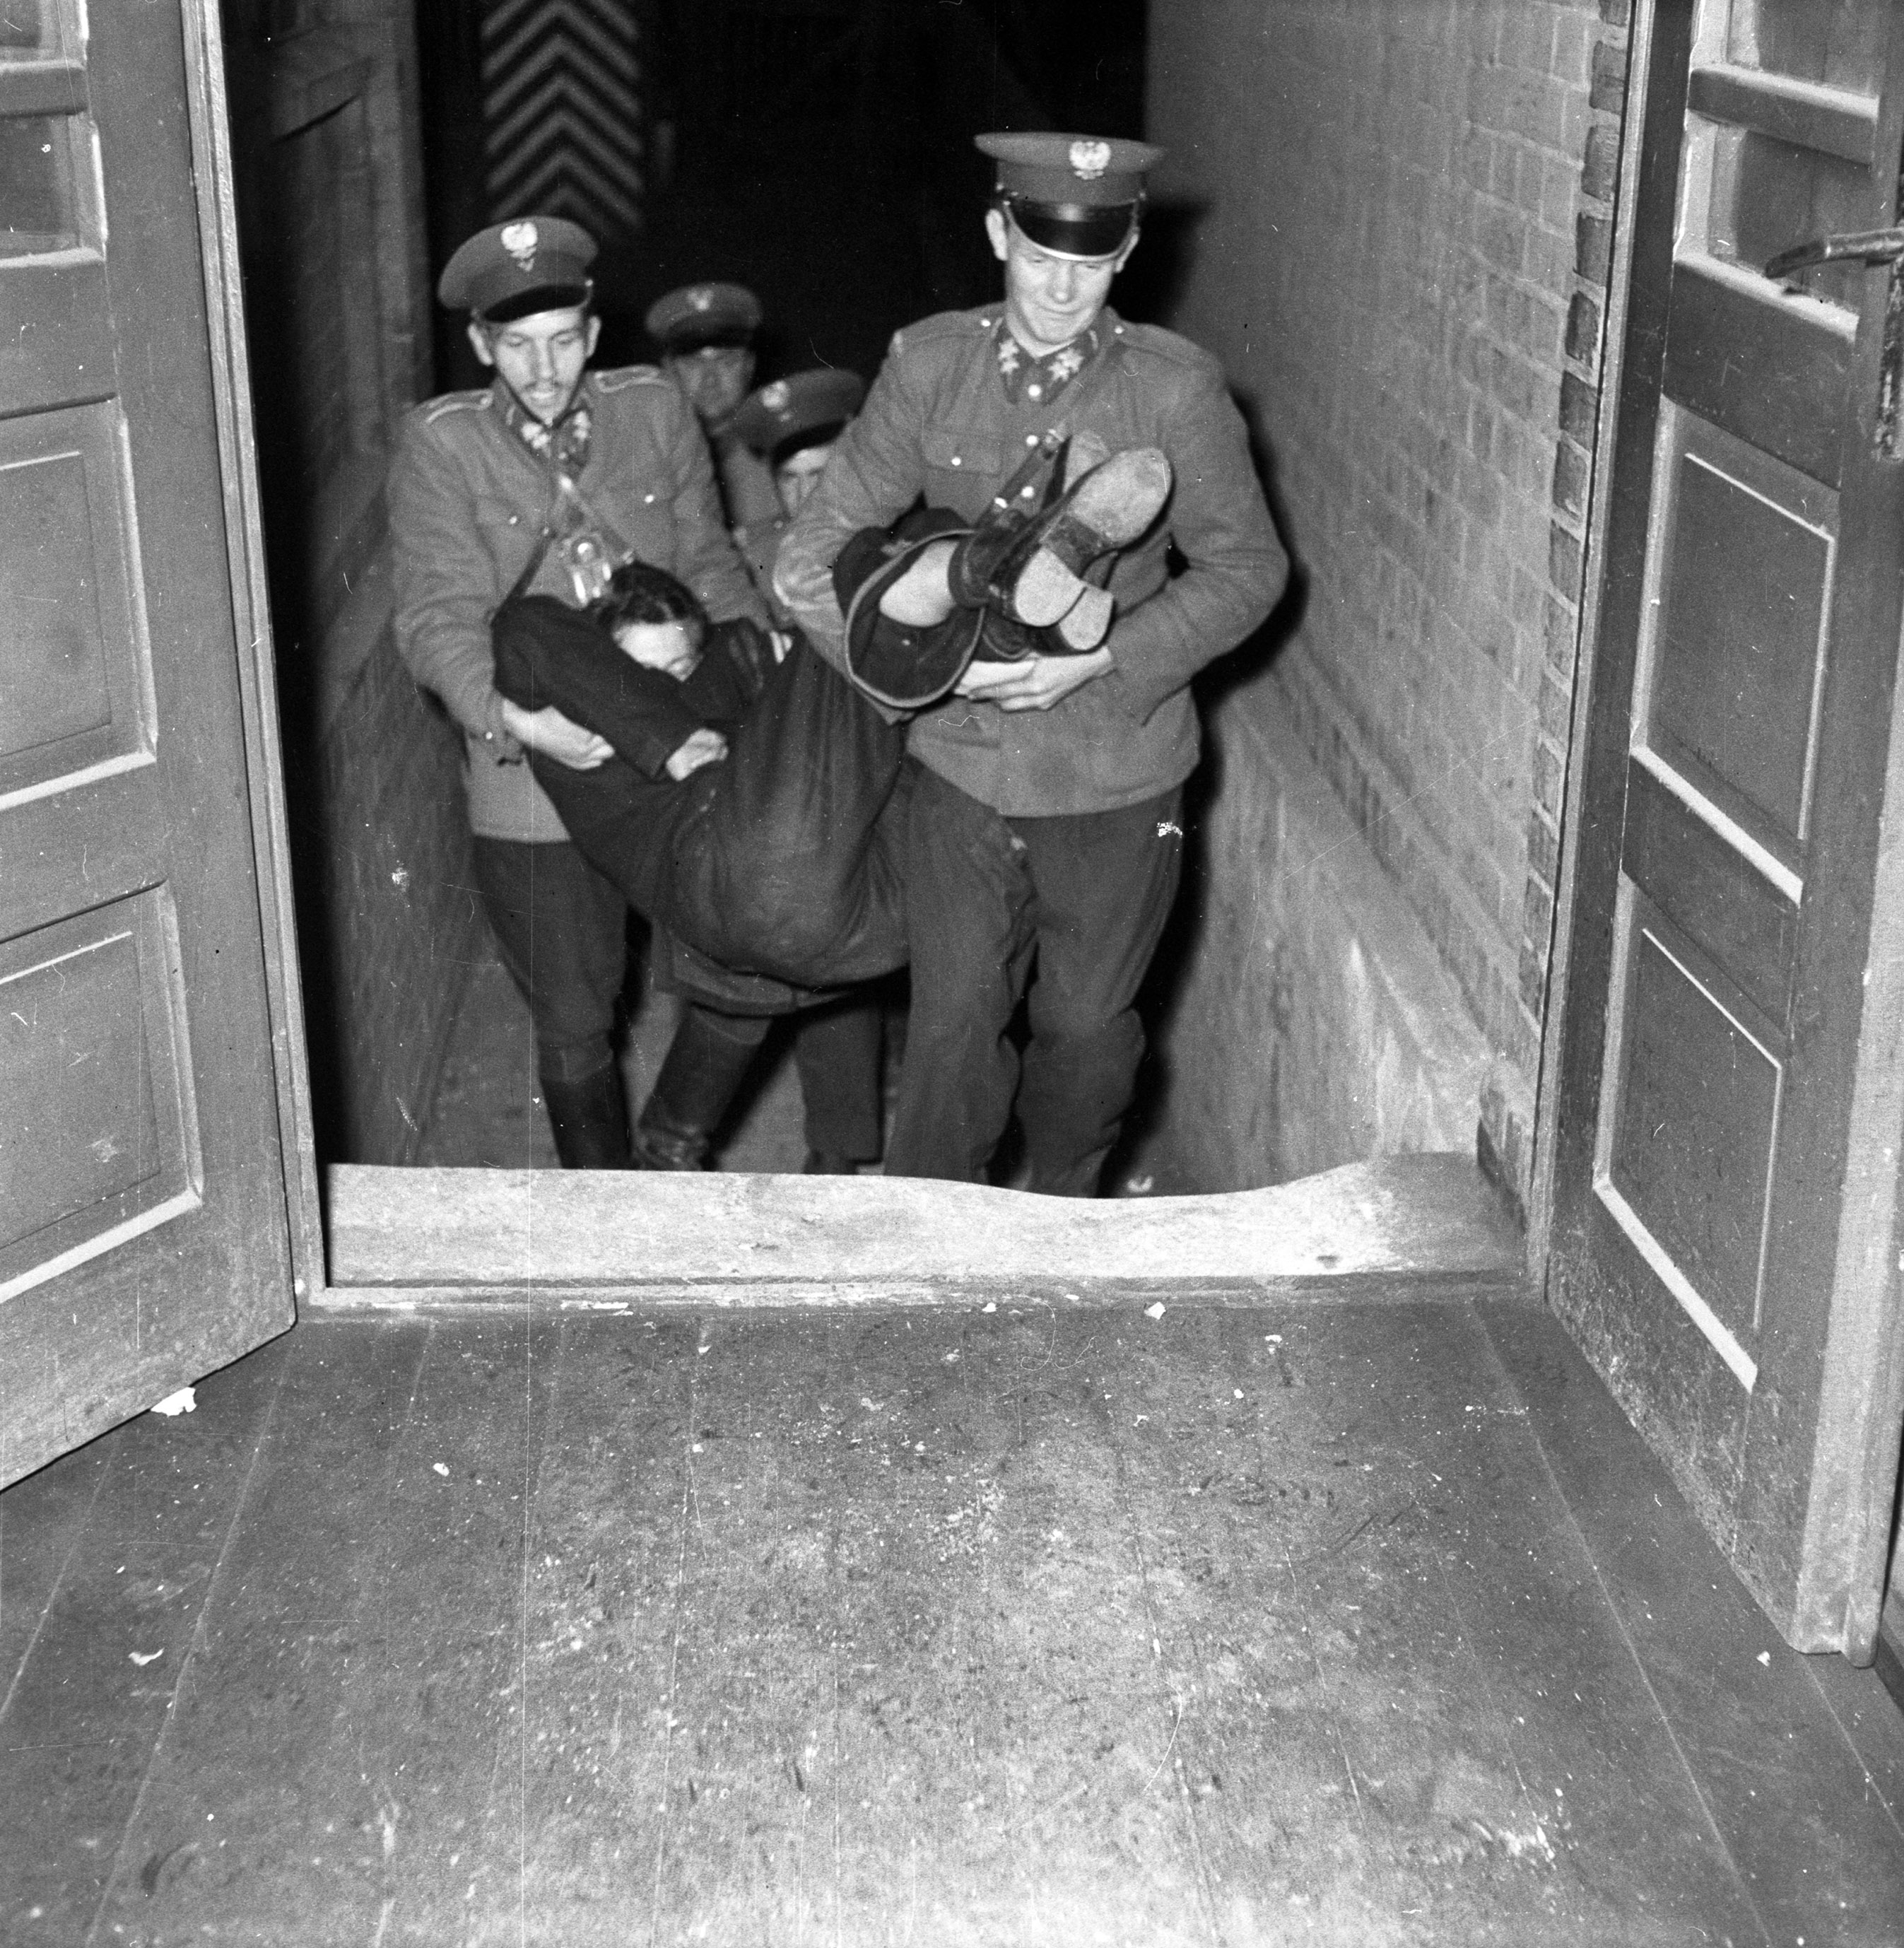 Milicjanci niosą pijanego mężczyznę na komendę, Katowice, październik 1957 r.